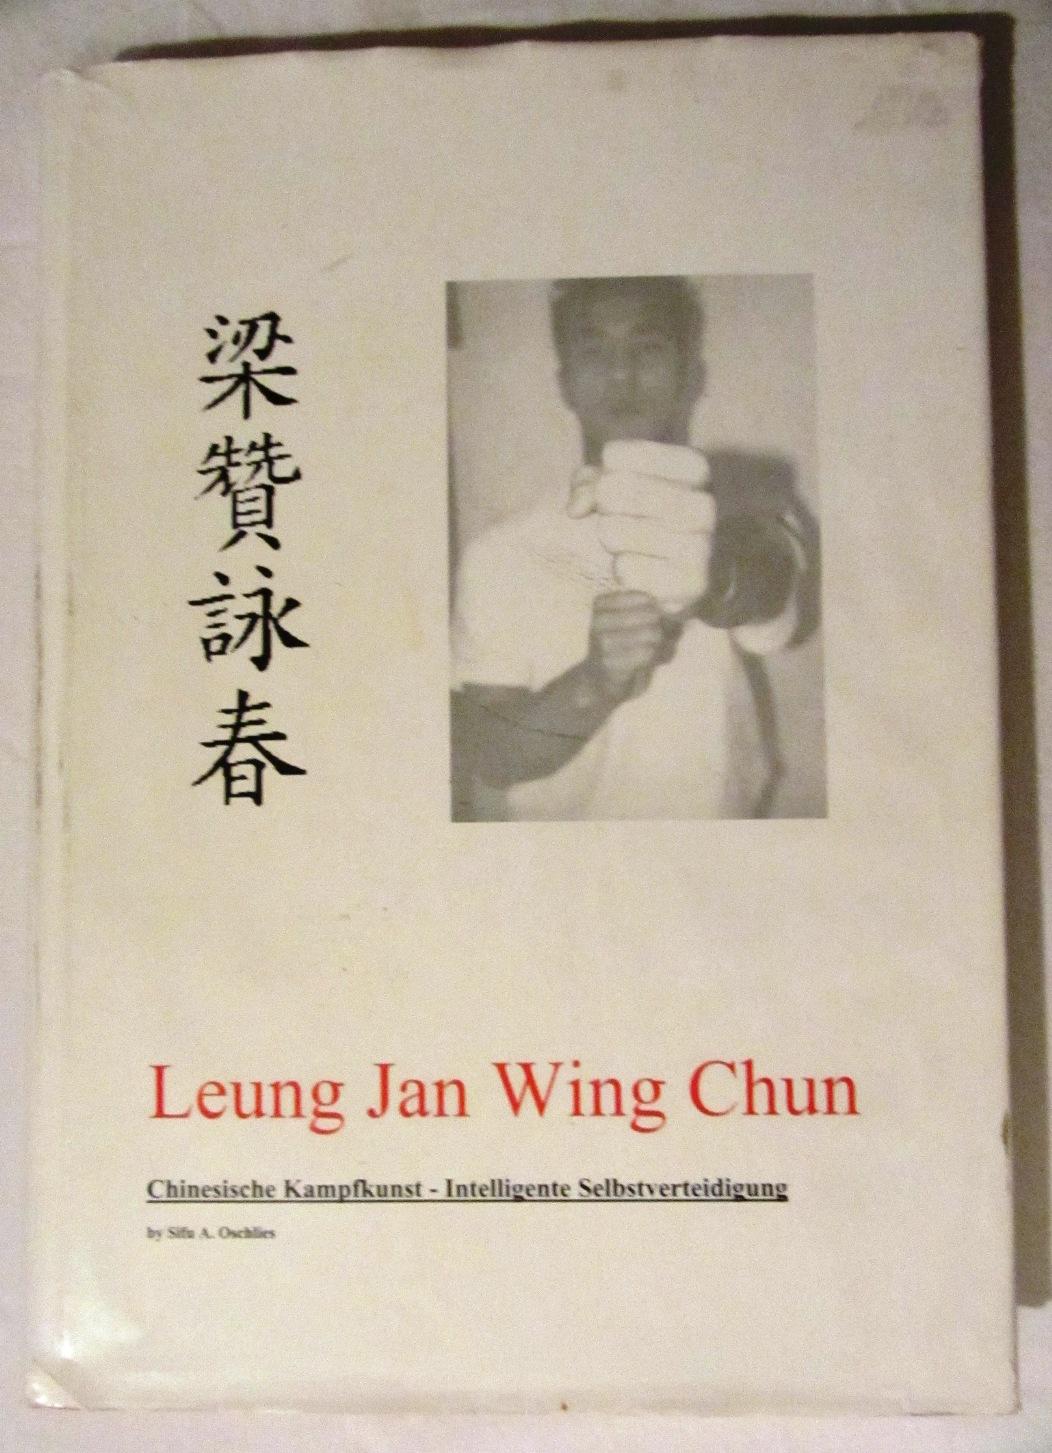 Leung Jan Wing Chun: Chinesische Kampfkunst - Intelligente Selbstverteidigung